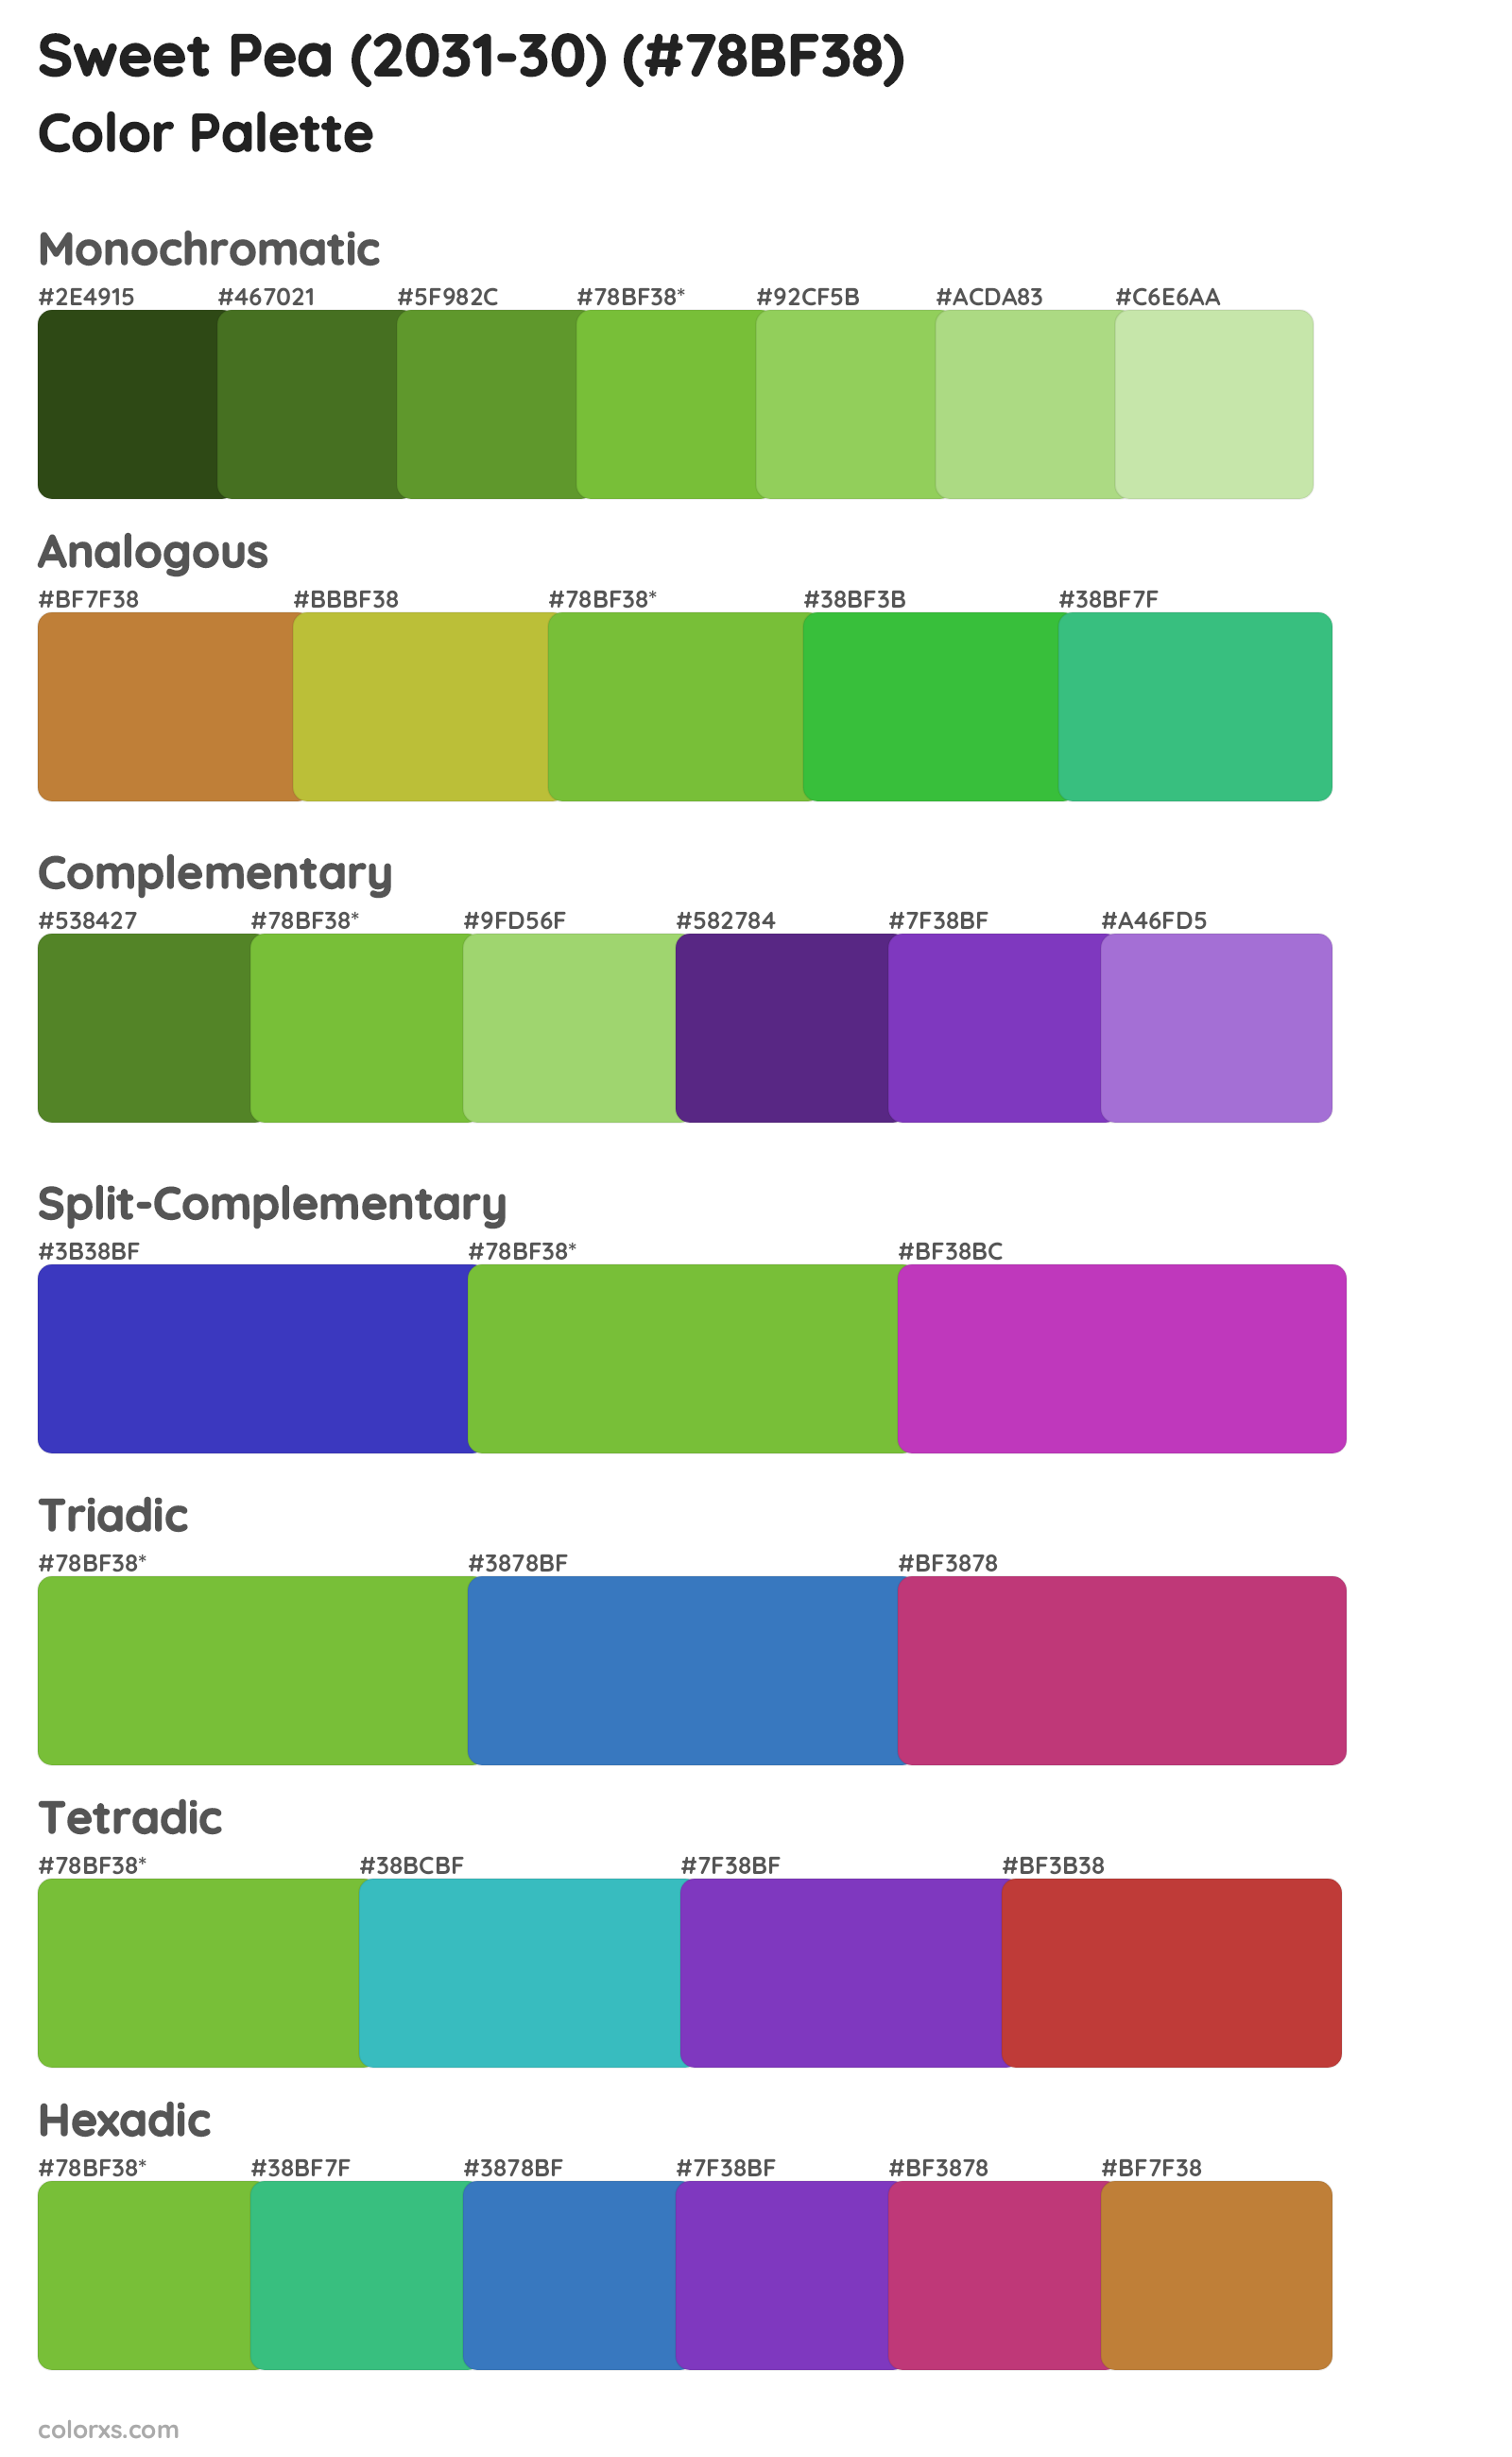 Sweet Pea (2031-30) Color Scheme Palettes